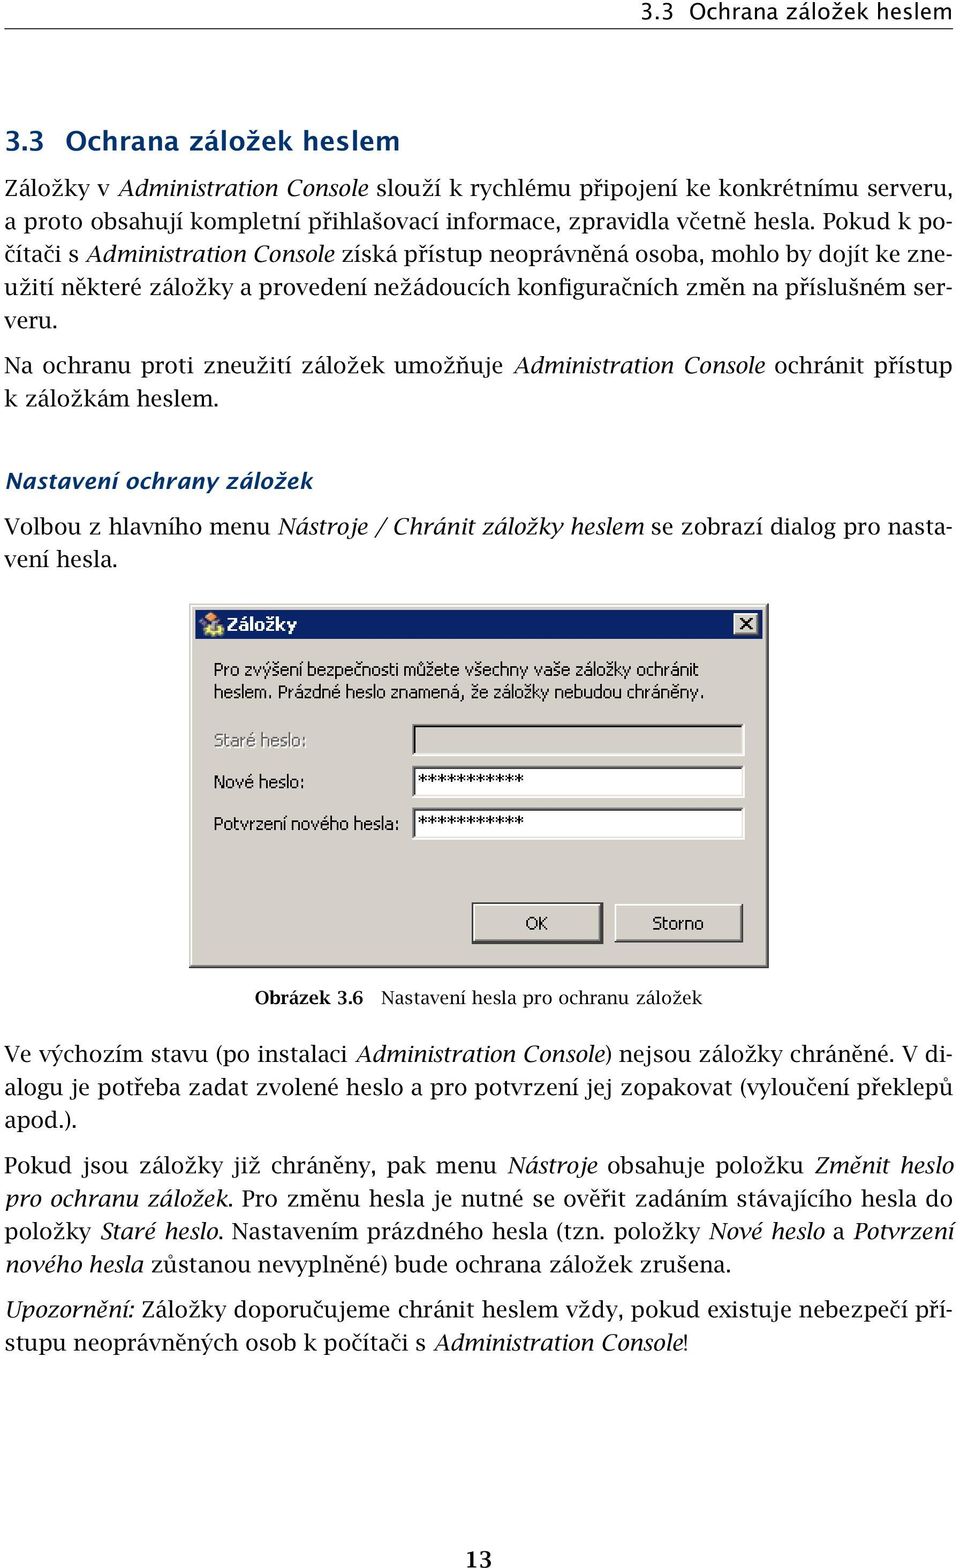 Pokud k počítači s Administration Console získá přístup neoprávněná osoba, mohlo by dojít ke zneužití některé záložky a provedení nežádoucích konfiguračních změn na příslušném serveru.